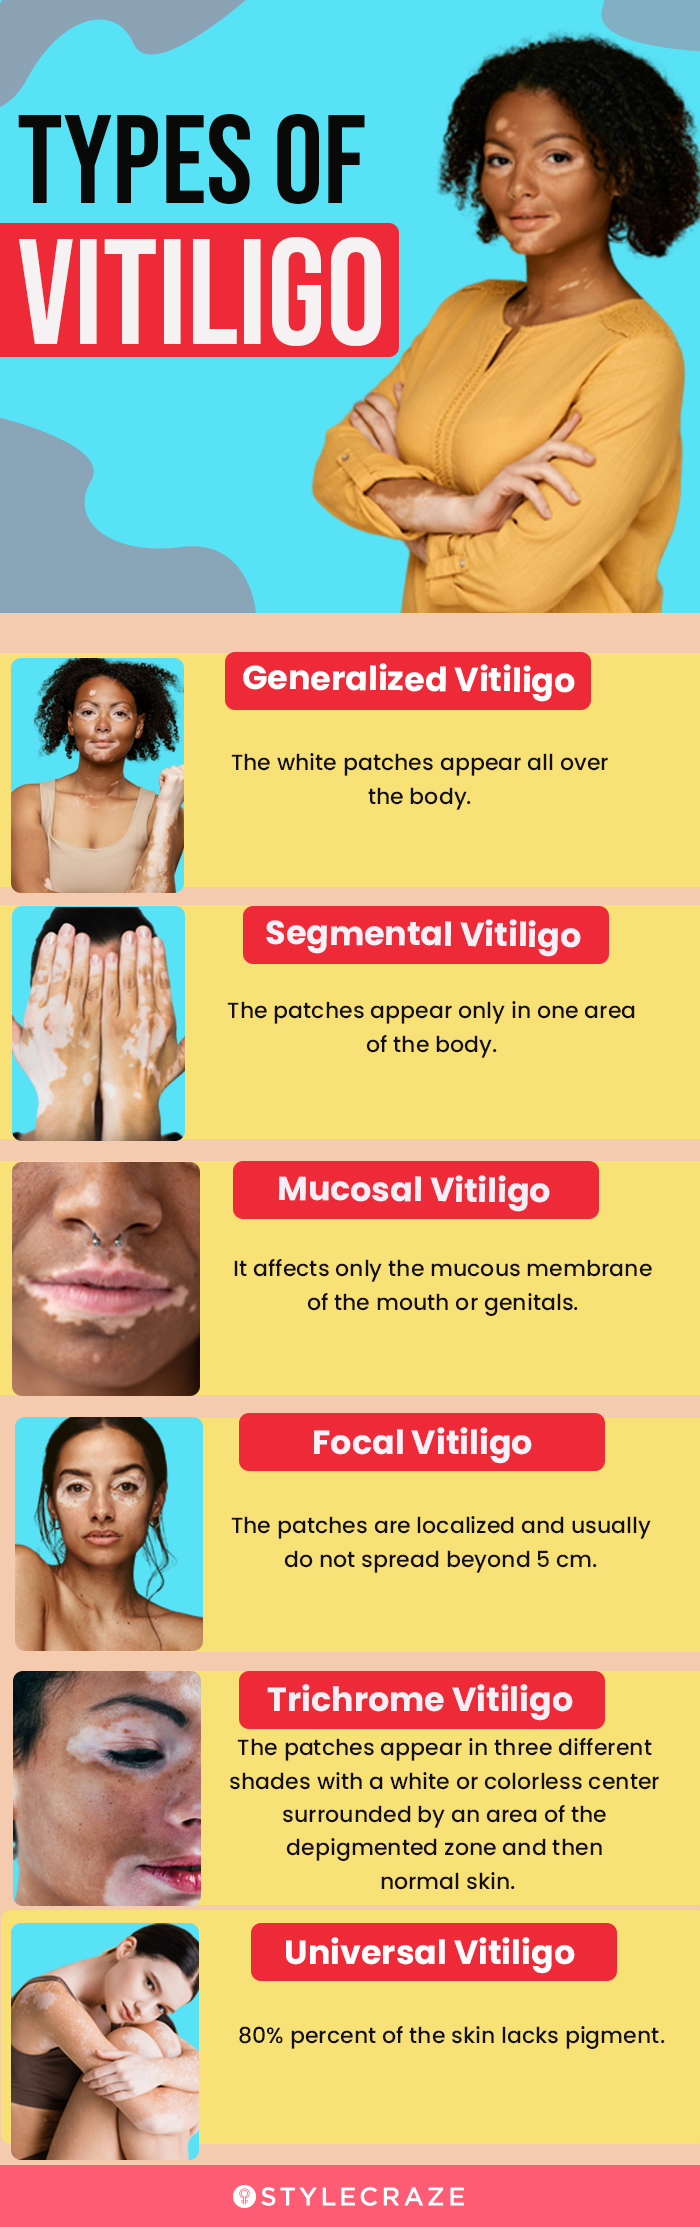 types of vitiligo [infographic]